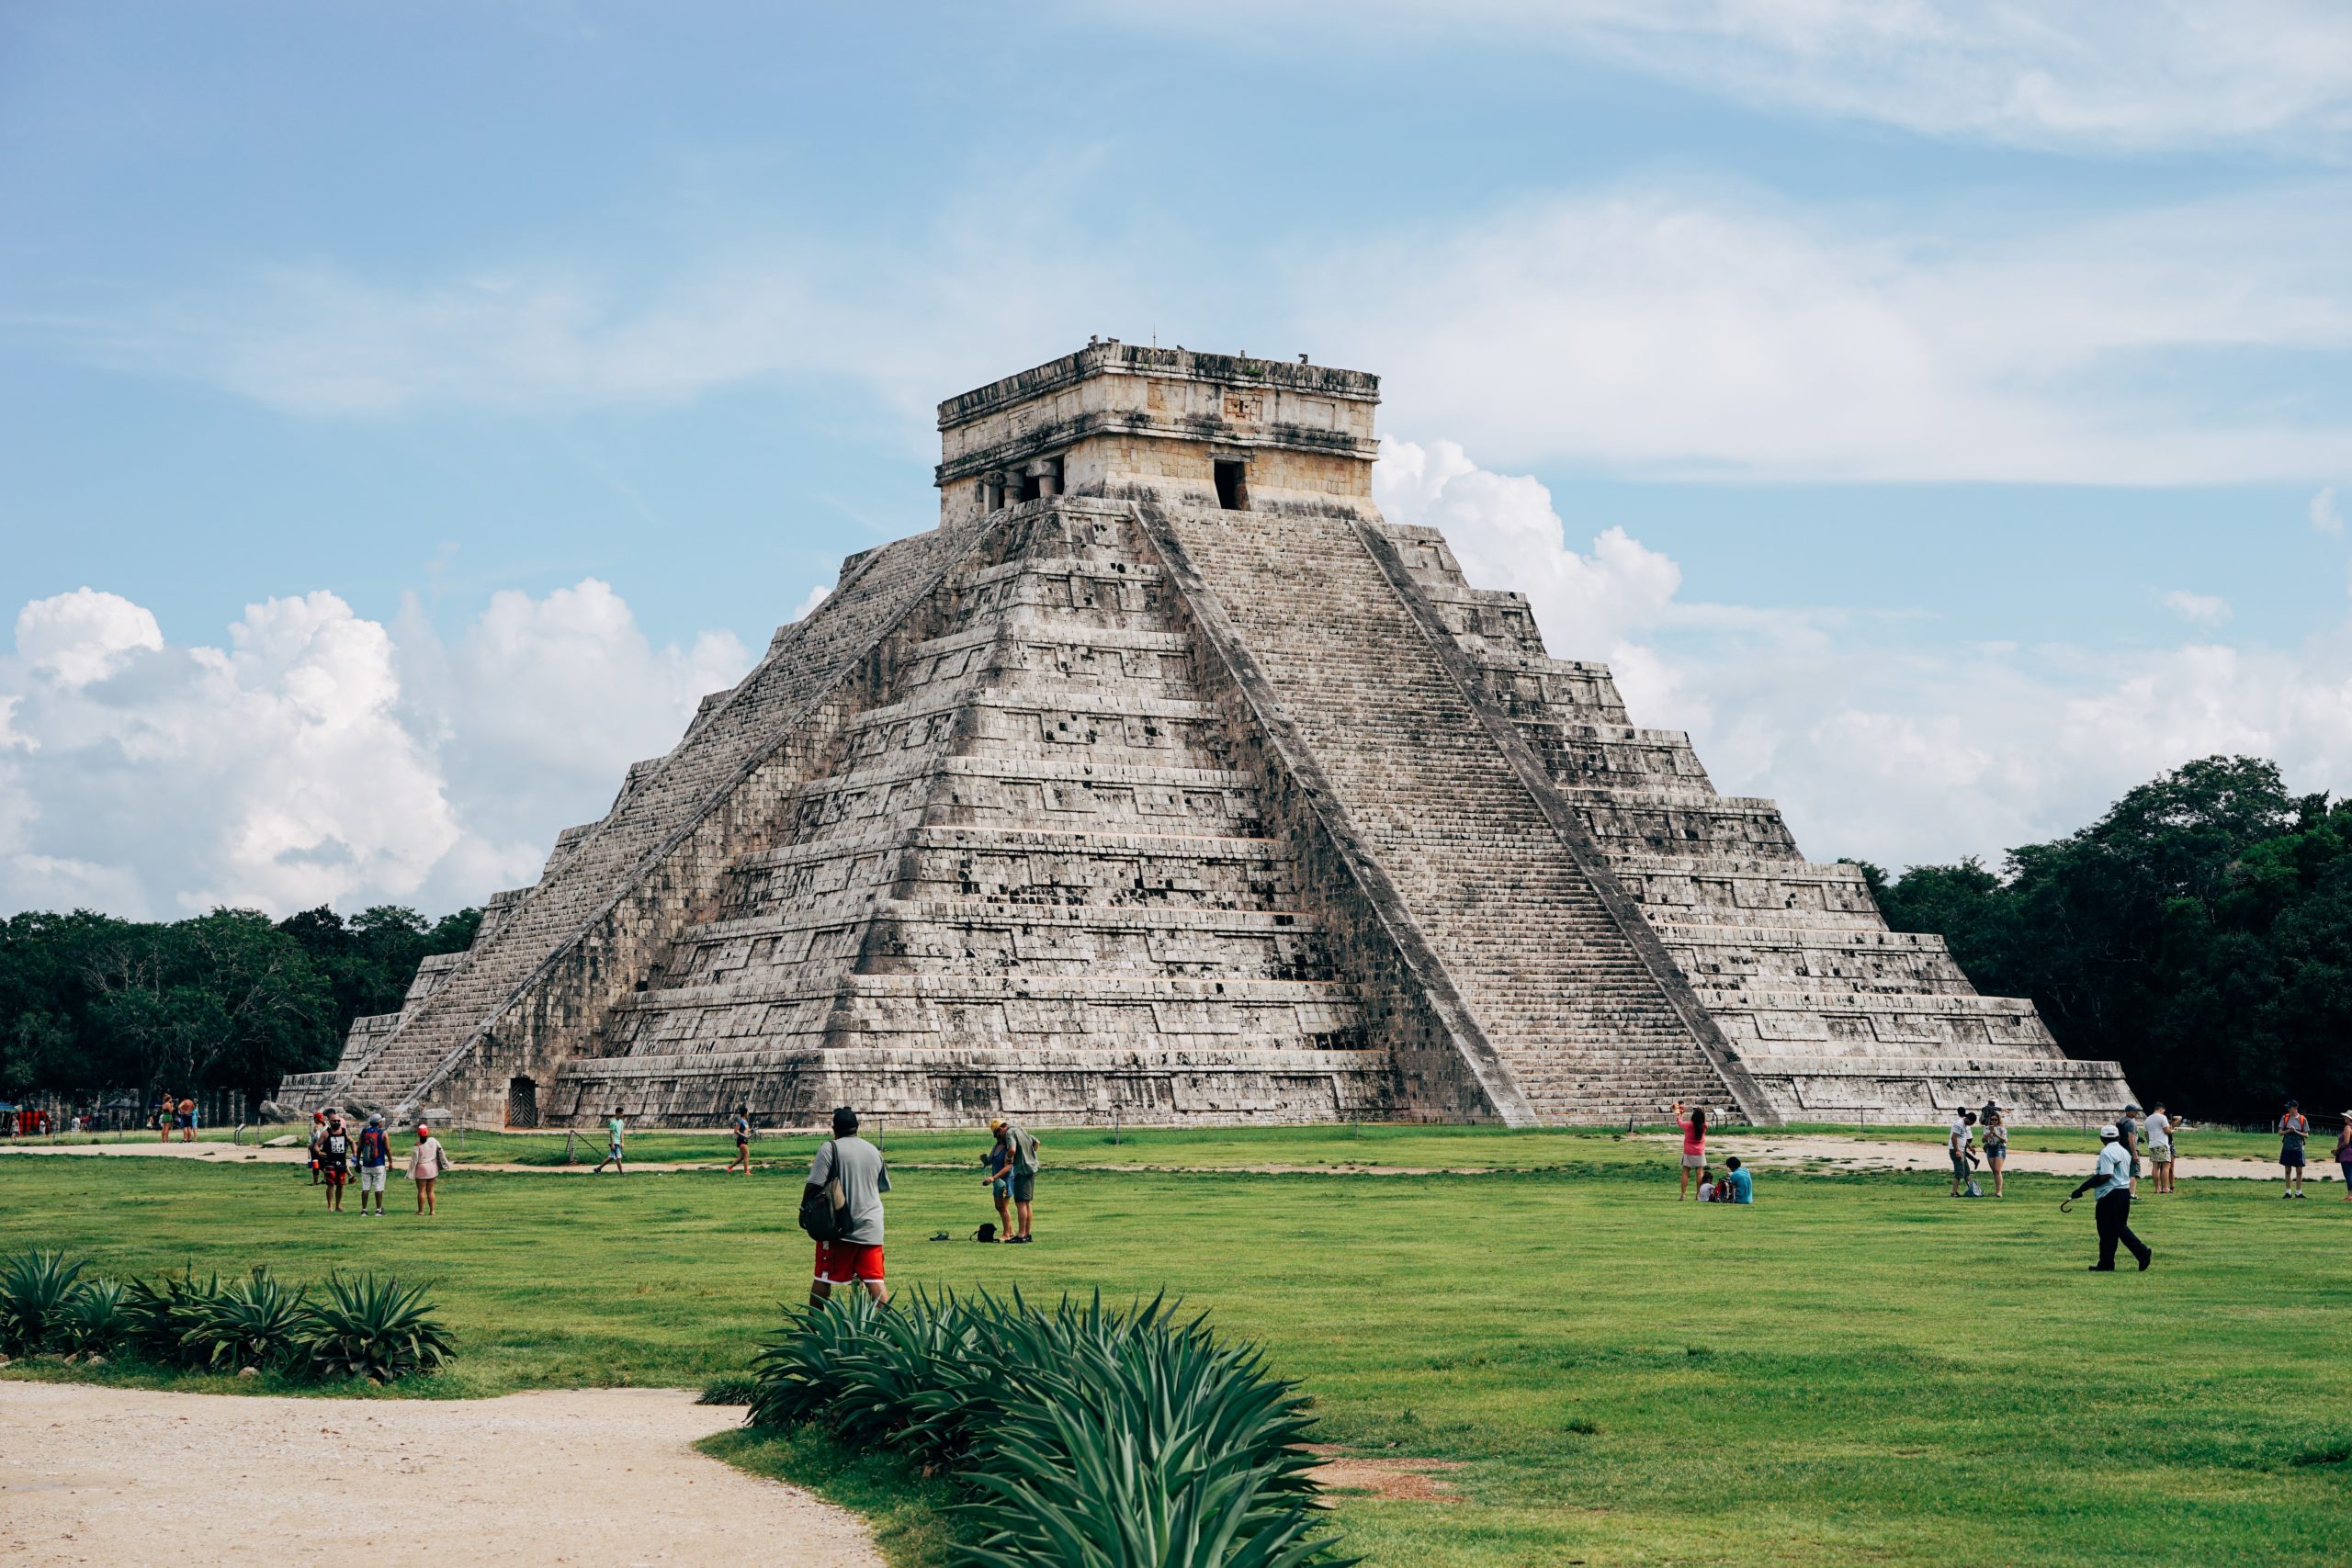 The pyramid of Chichen Itza, Mexico